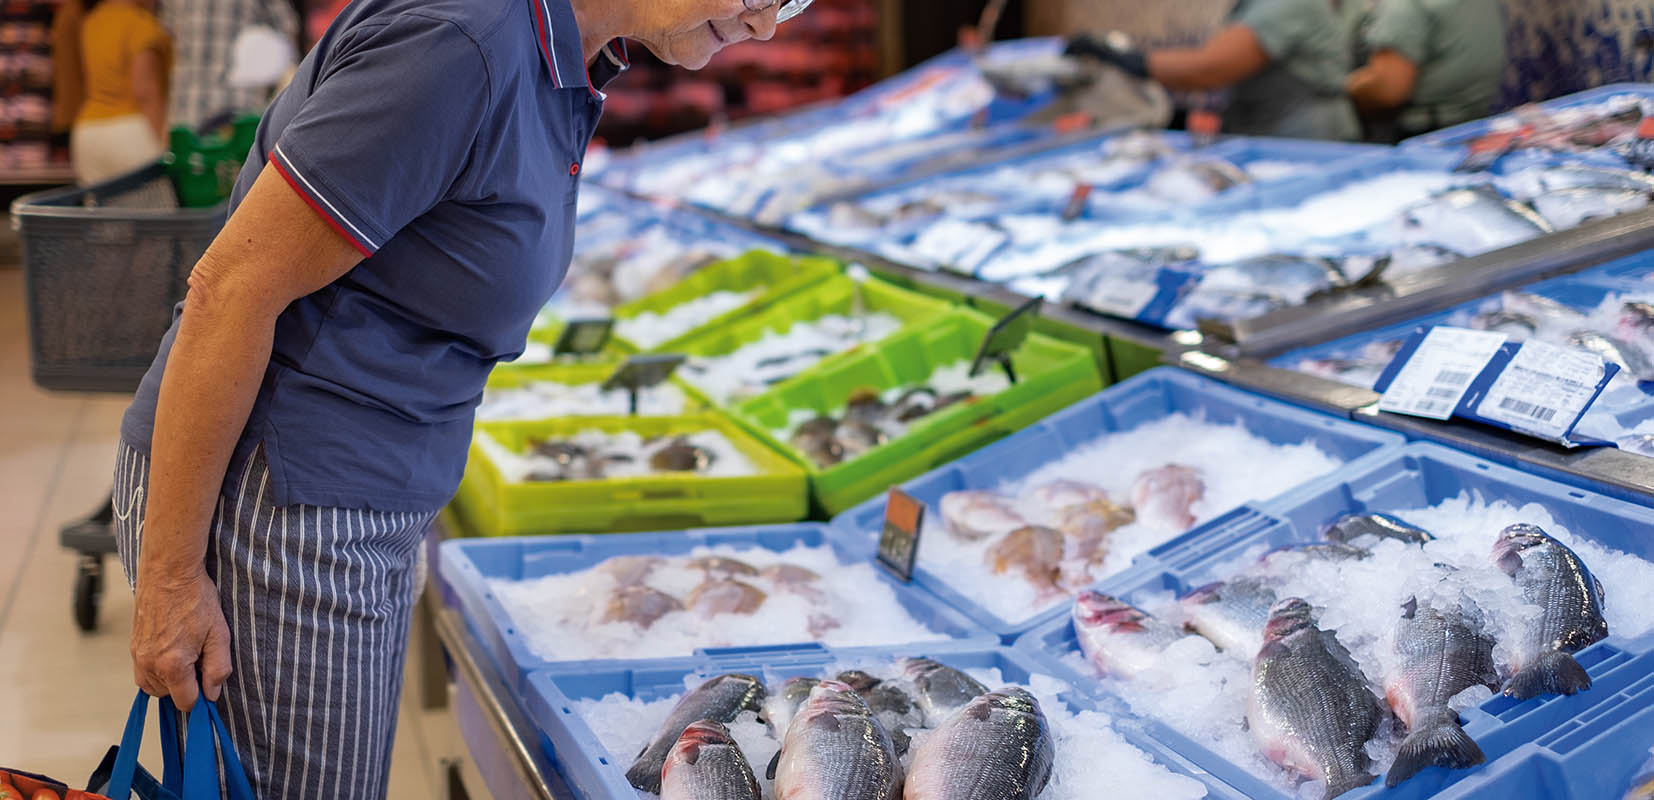 Un vendedor de pescado en un mercado de mariscos sacando un filete de pescado congelado del refrigerador